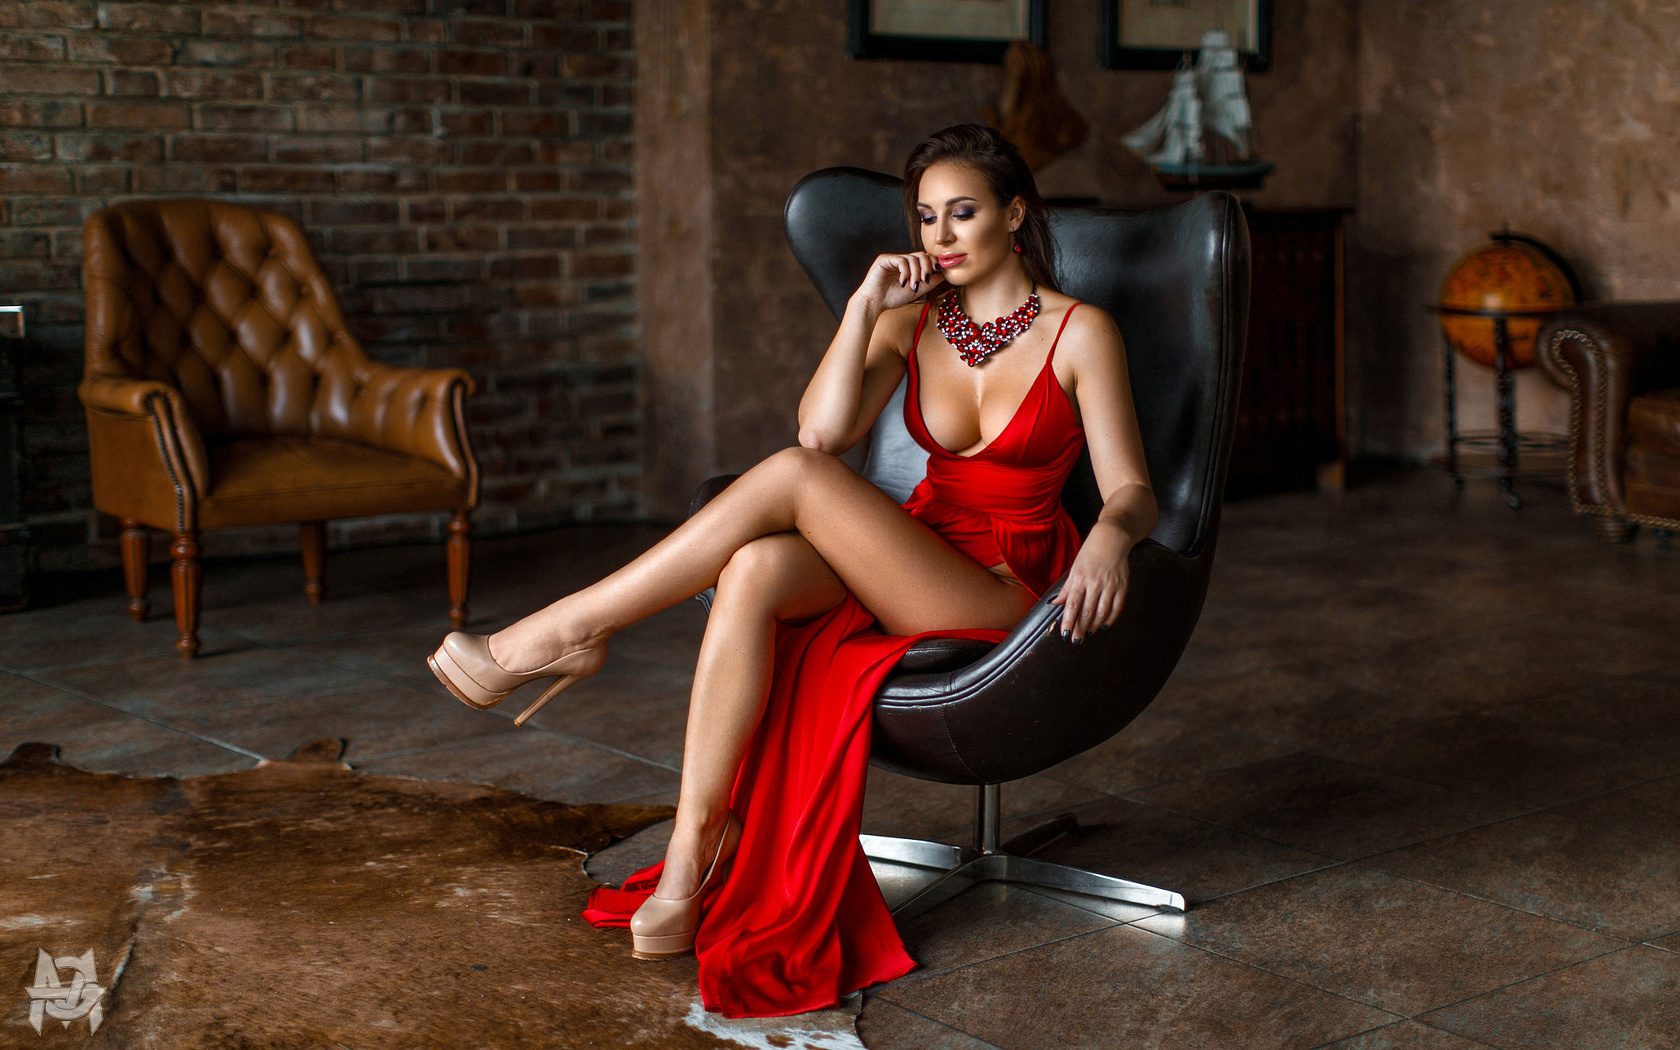 women, mihail gerasimov, sitting, high heels, red dress, legs, brunette, painted nails, legs crossed